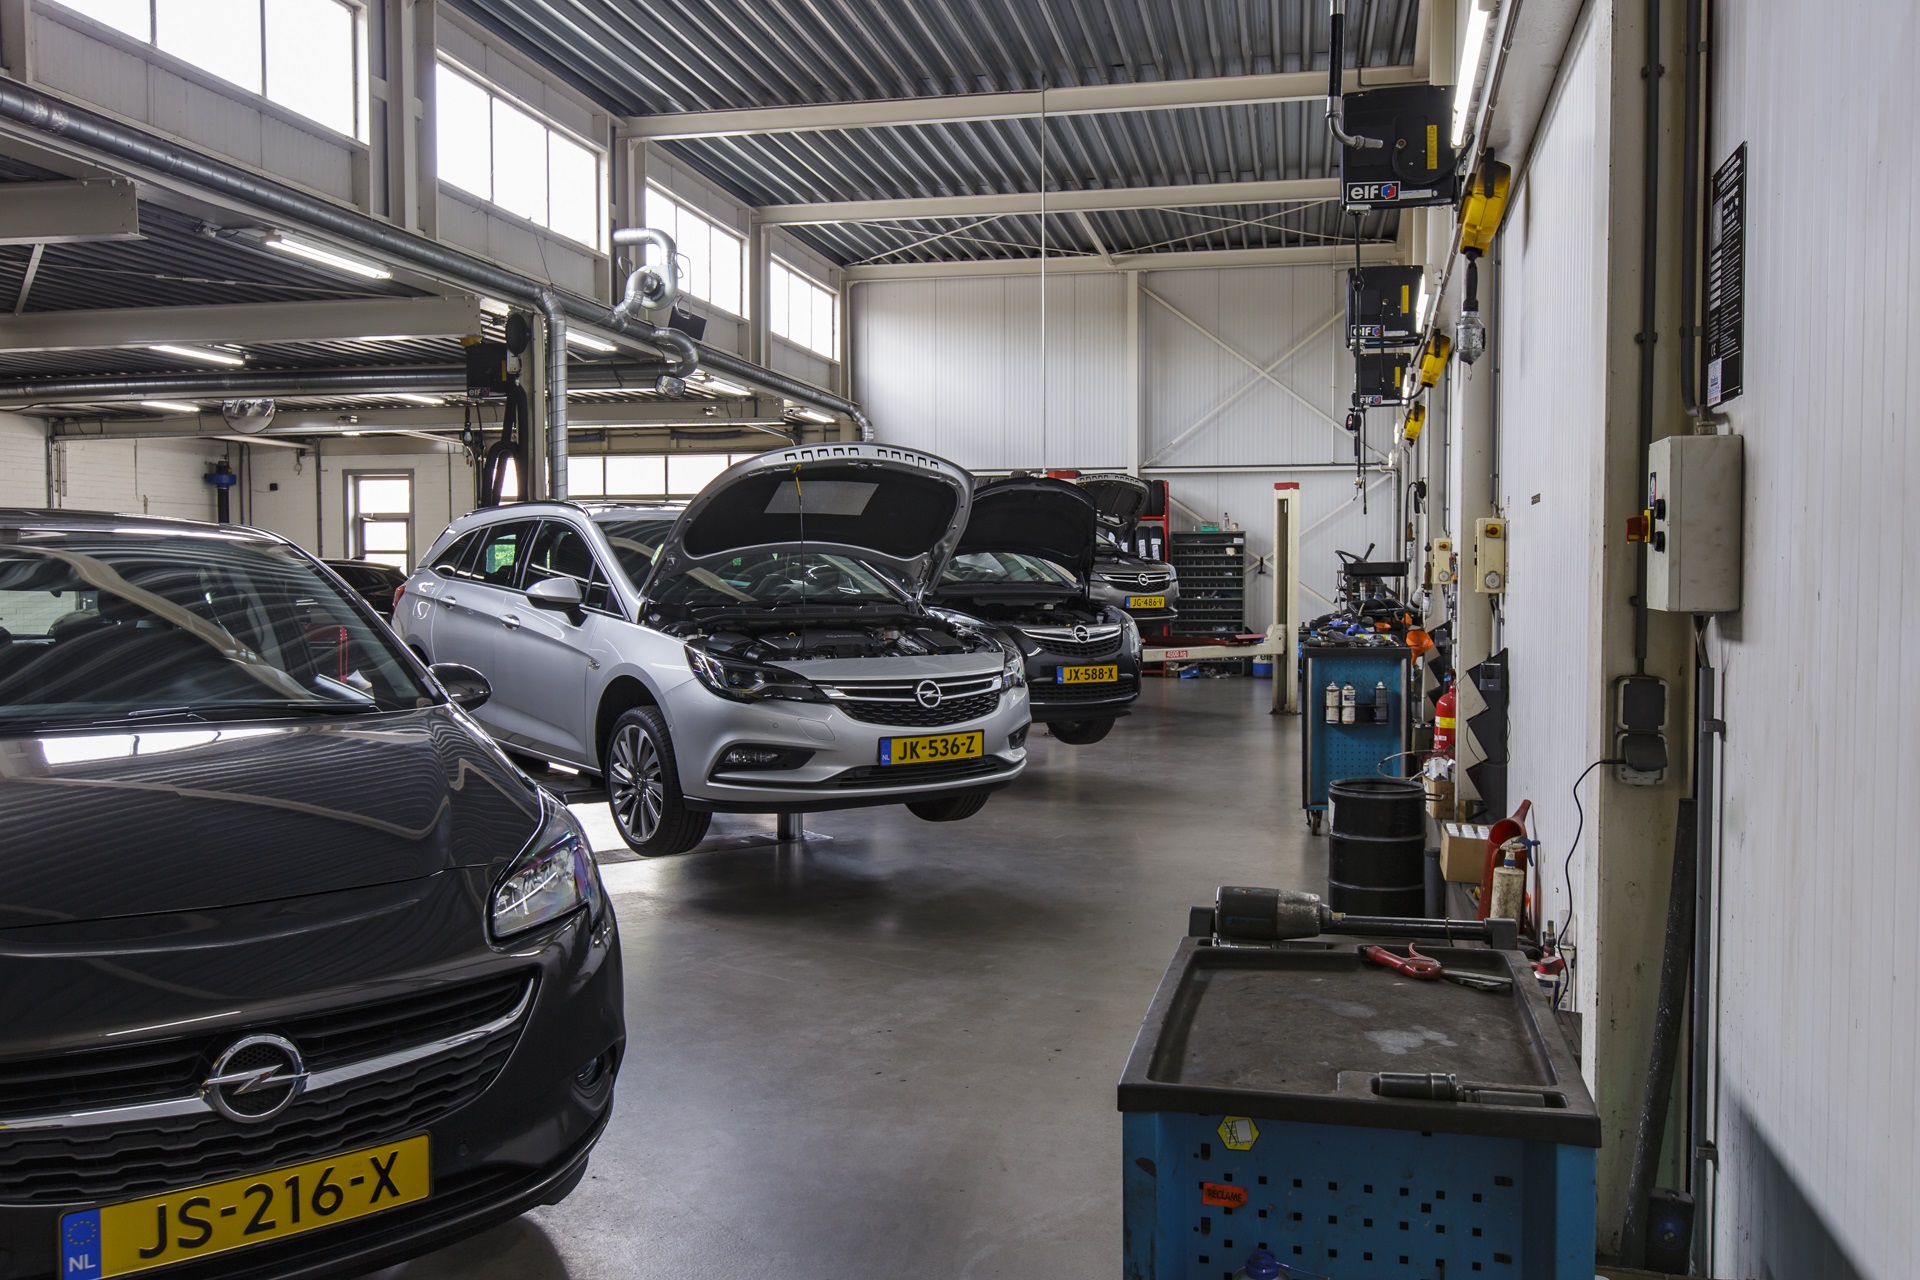 Aubergine Vochtigheid Misleidend Zoekt u een Opel Specialist? | TOP Merkspecialist in Opel | Scherpe prijs